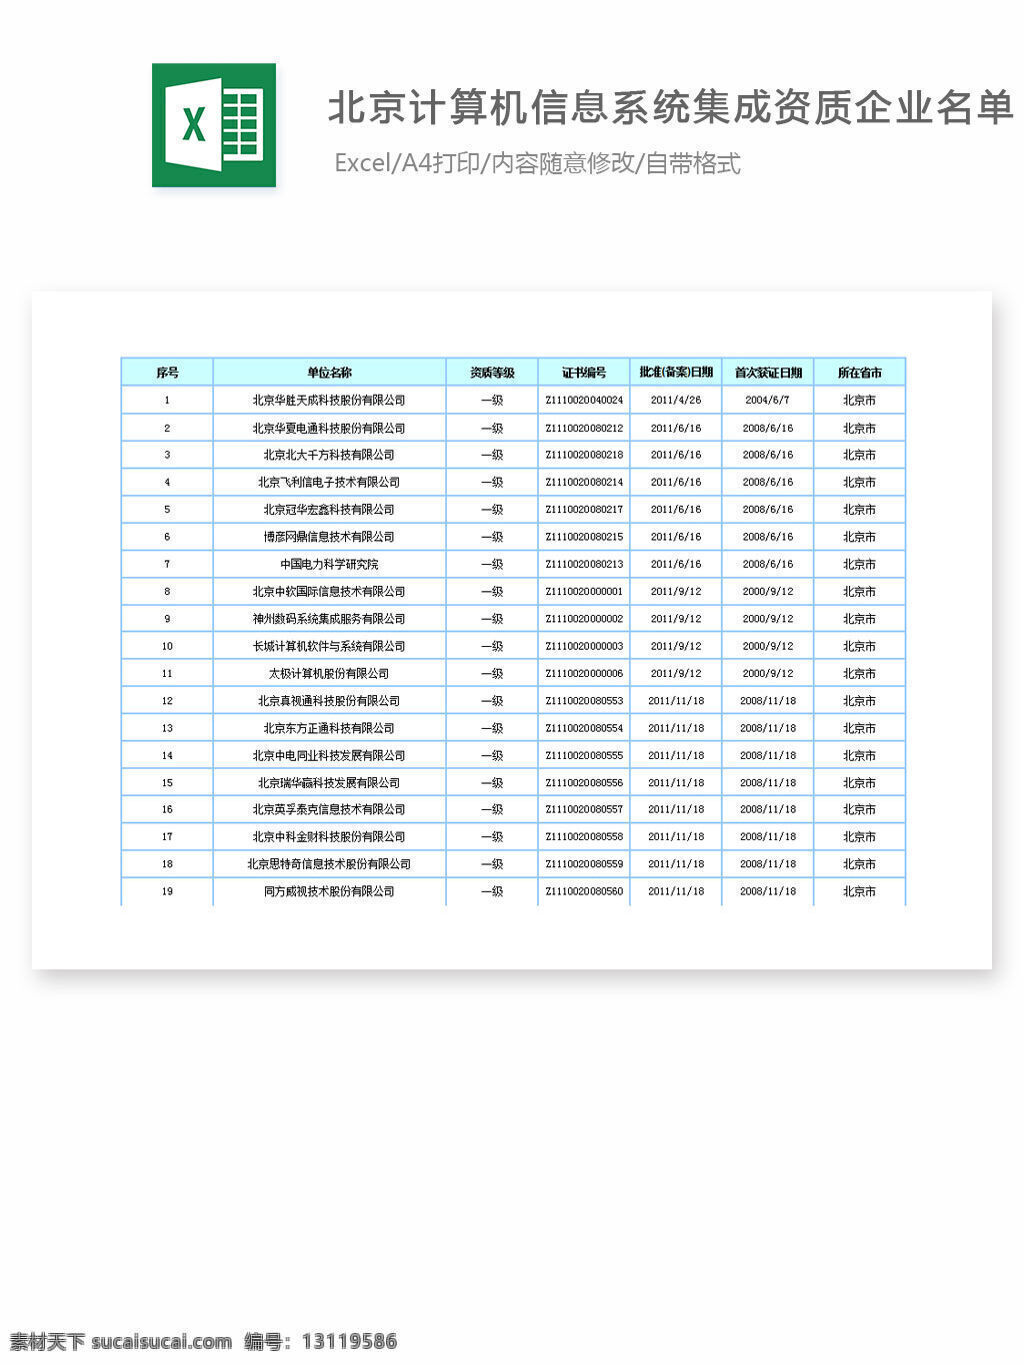 北京 计算机 信息 系统集成 资质 企业 名单 excel 表格 表格模板 表格设计 图表